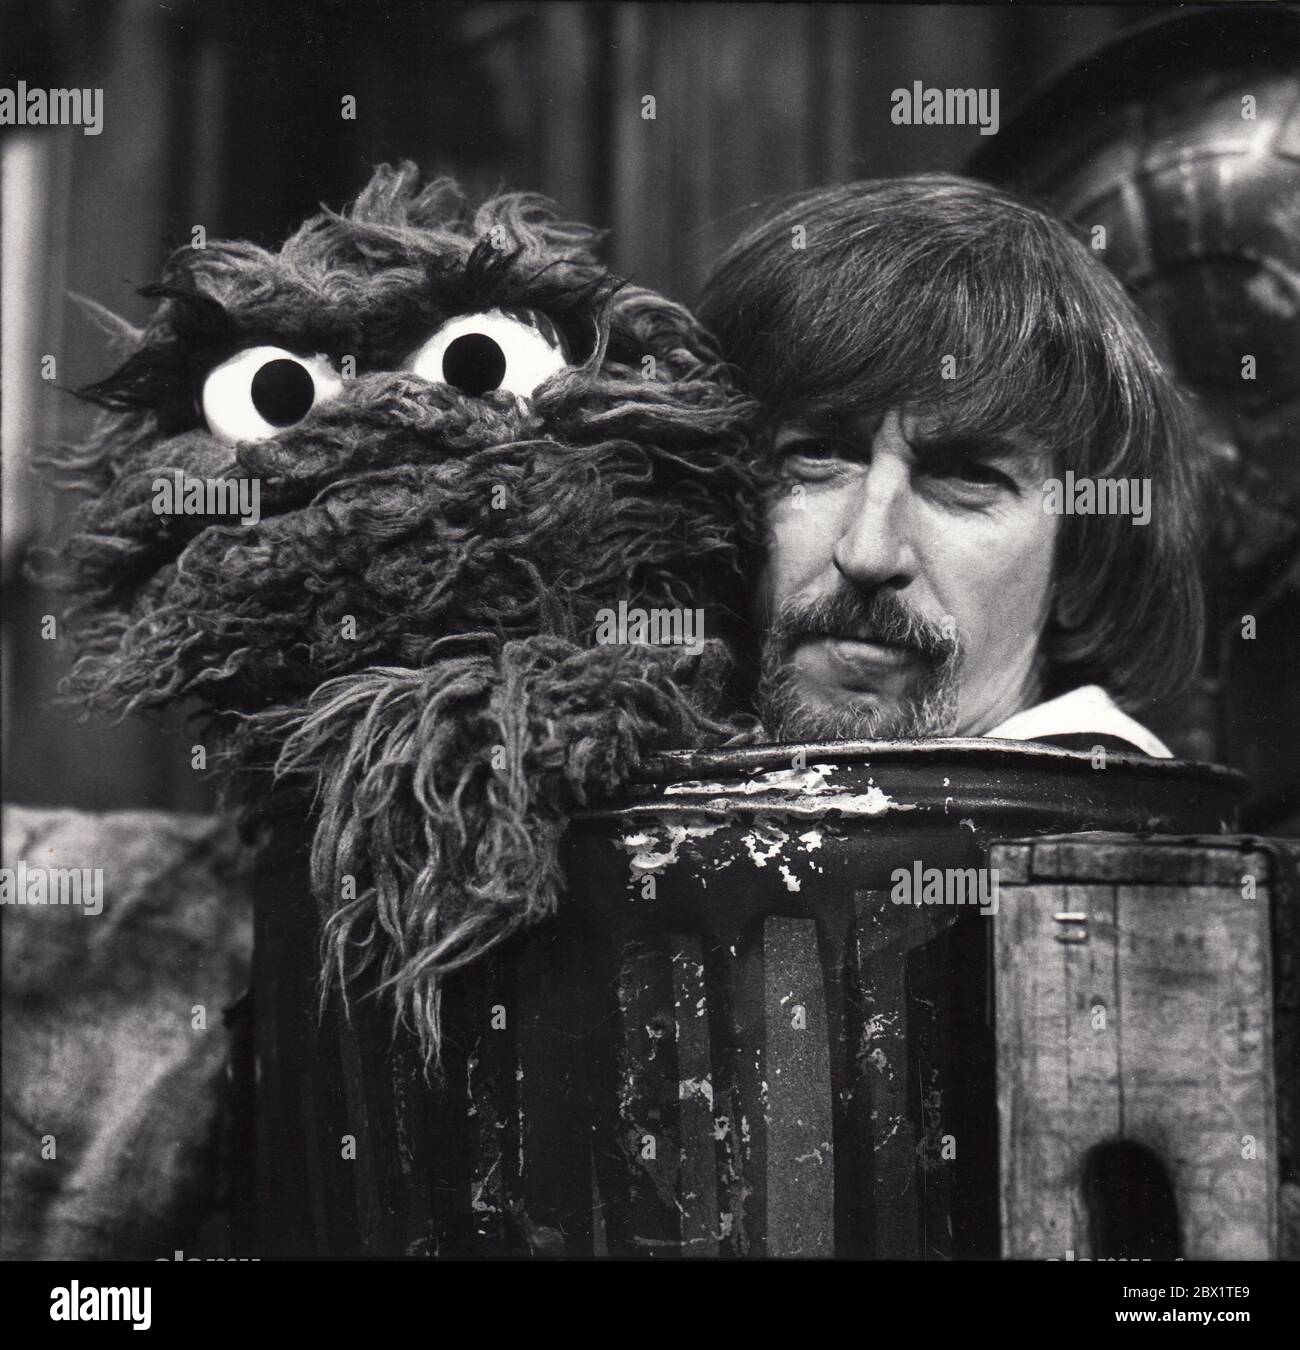 Carroll Spinney, marionnettiste de Sesame Street, partage une poubelle avec Oscar The Grouch lors d'une série de spectacles à la fin des années 1970. Banque D'Images